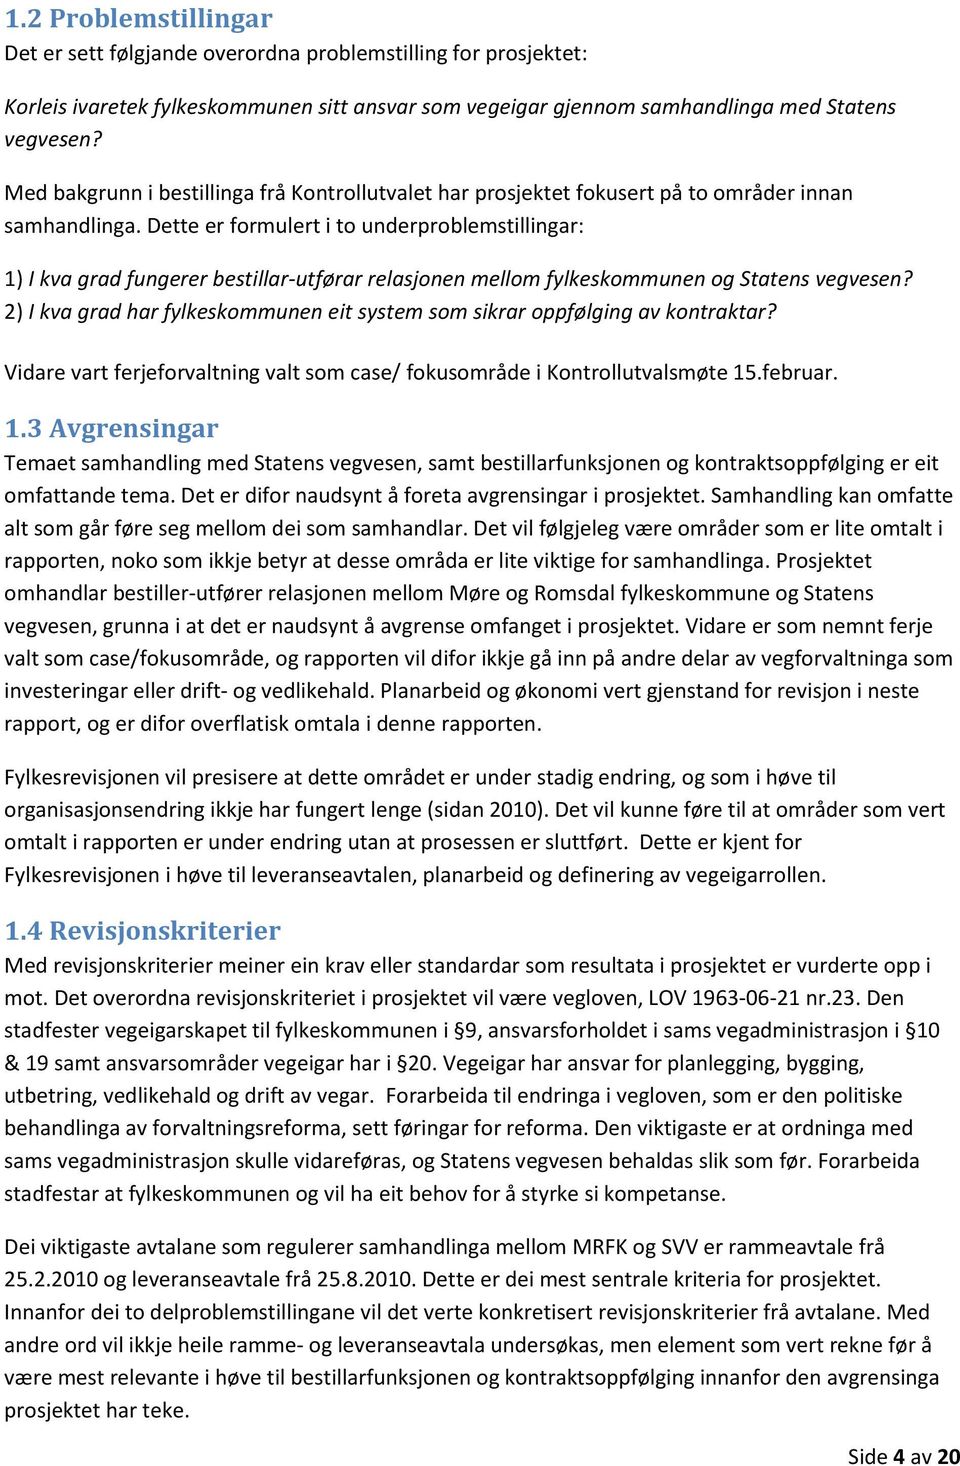 Dette er formulert i to underproblemstillingar: 1) I kva grad fungerer bestillar-utførar relasjonen mellom fylkeskommunen og Statens vegvesen?